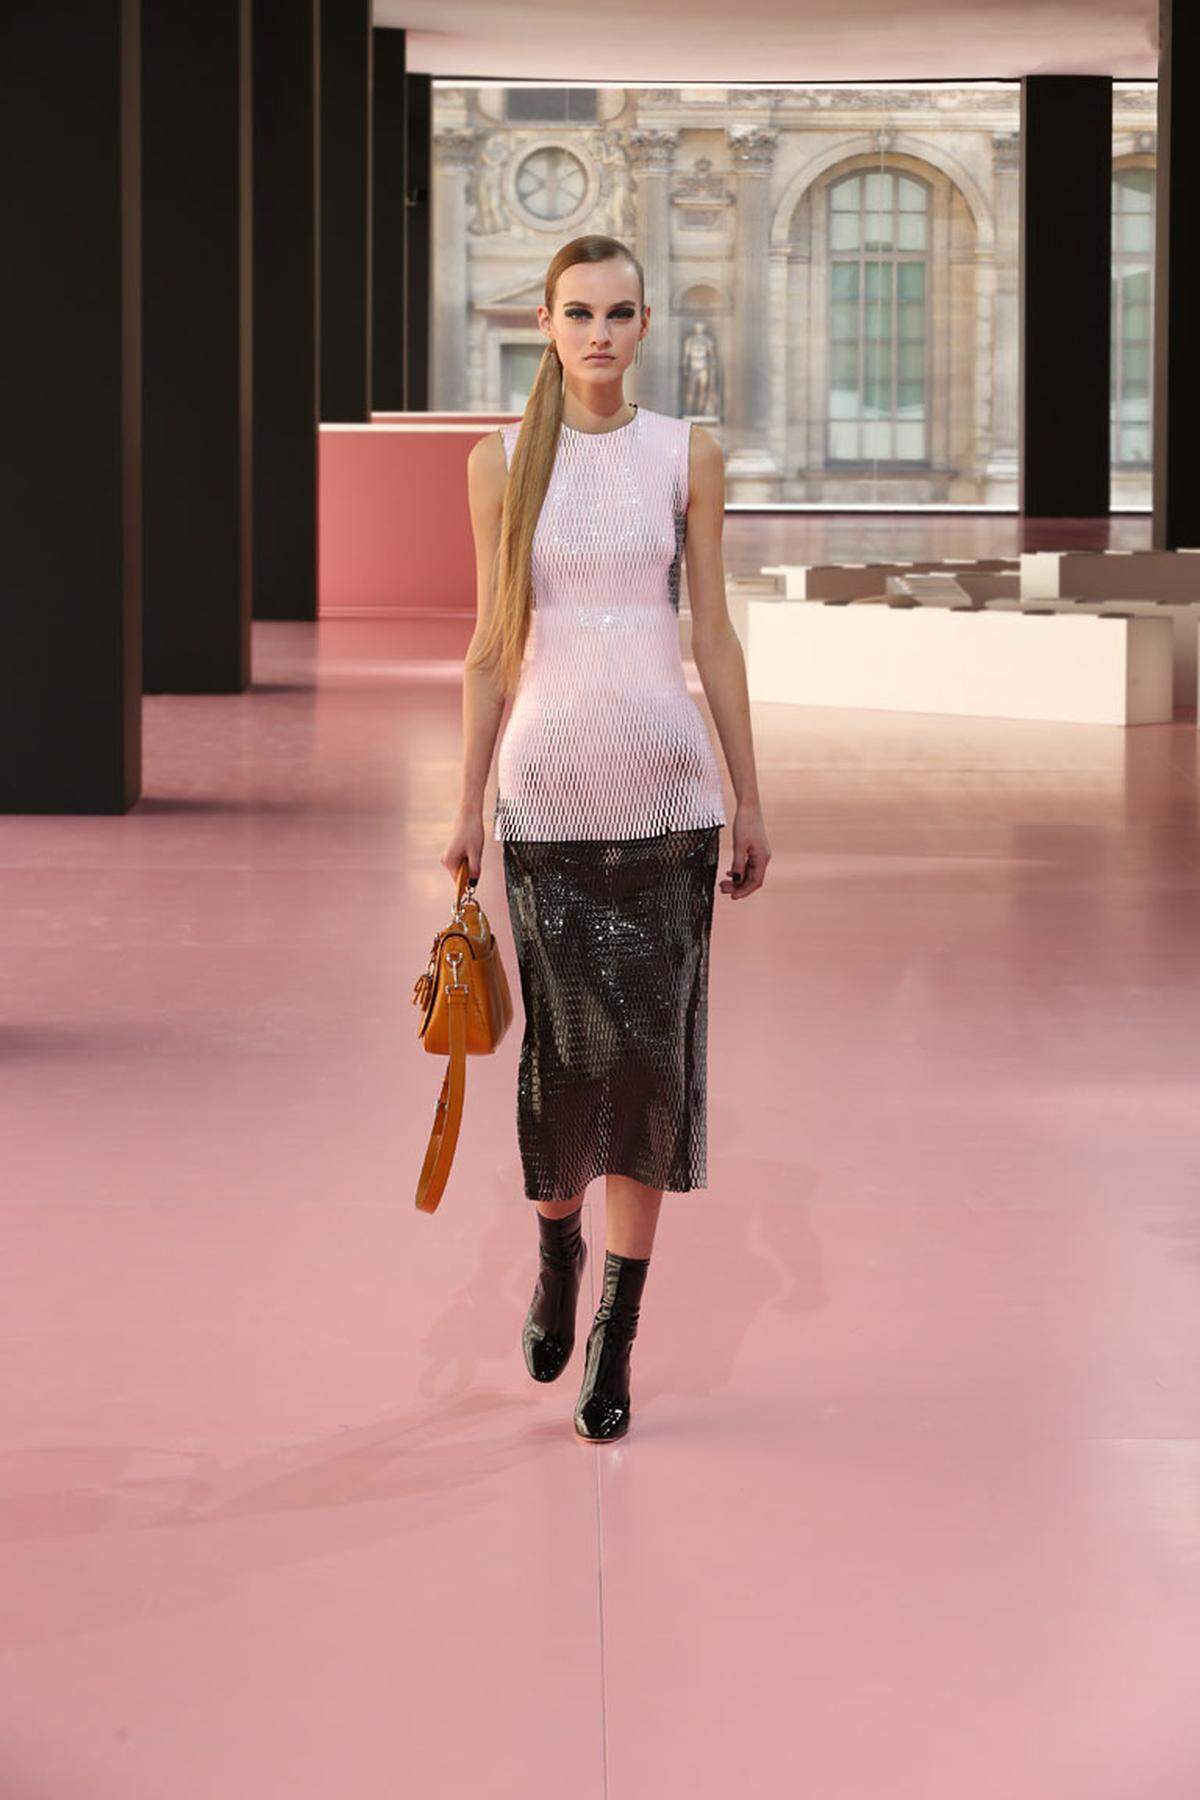 Das geht: Pastellnuancen können fürs erste eingewintert werden und sind wohl erst wieder im Frühling aktuell. Look von Christian Dior.